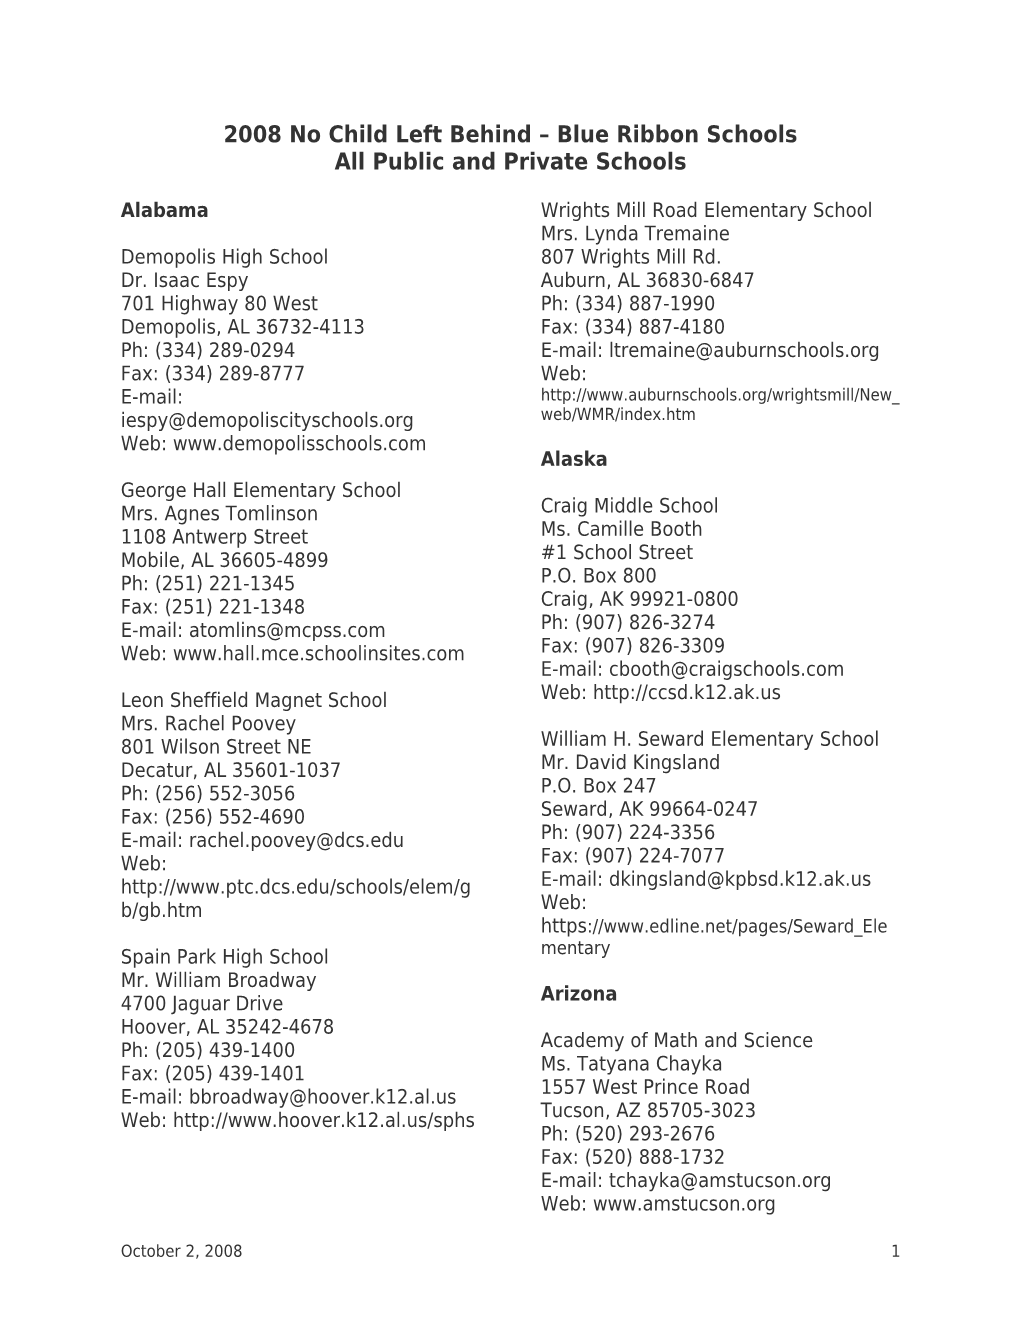 2008 NCLB-Blue Ribbon Schools: List of All Schools with Principals' Names October 2008 (Msword)